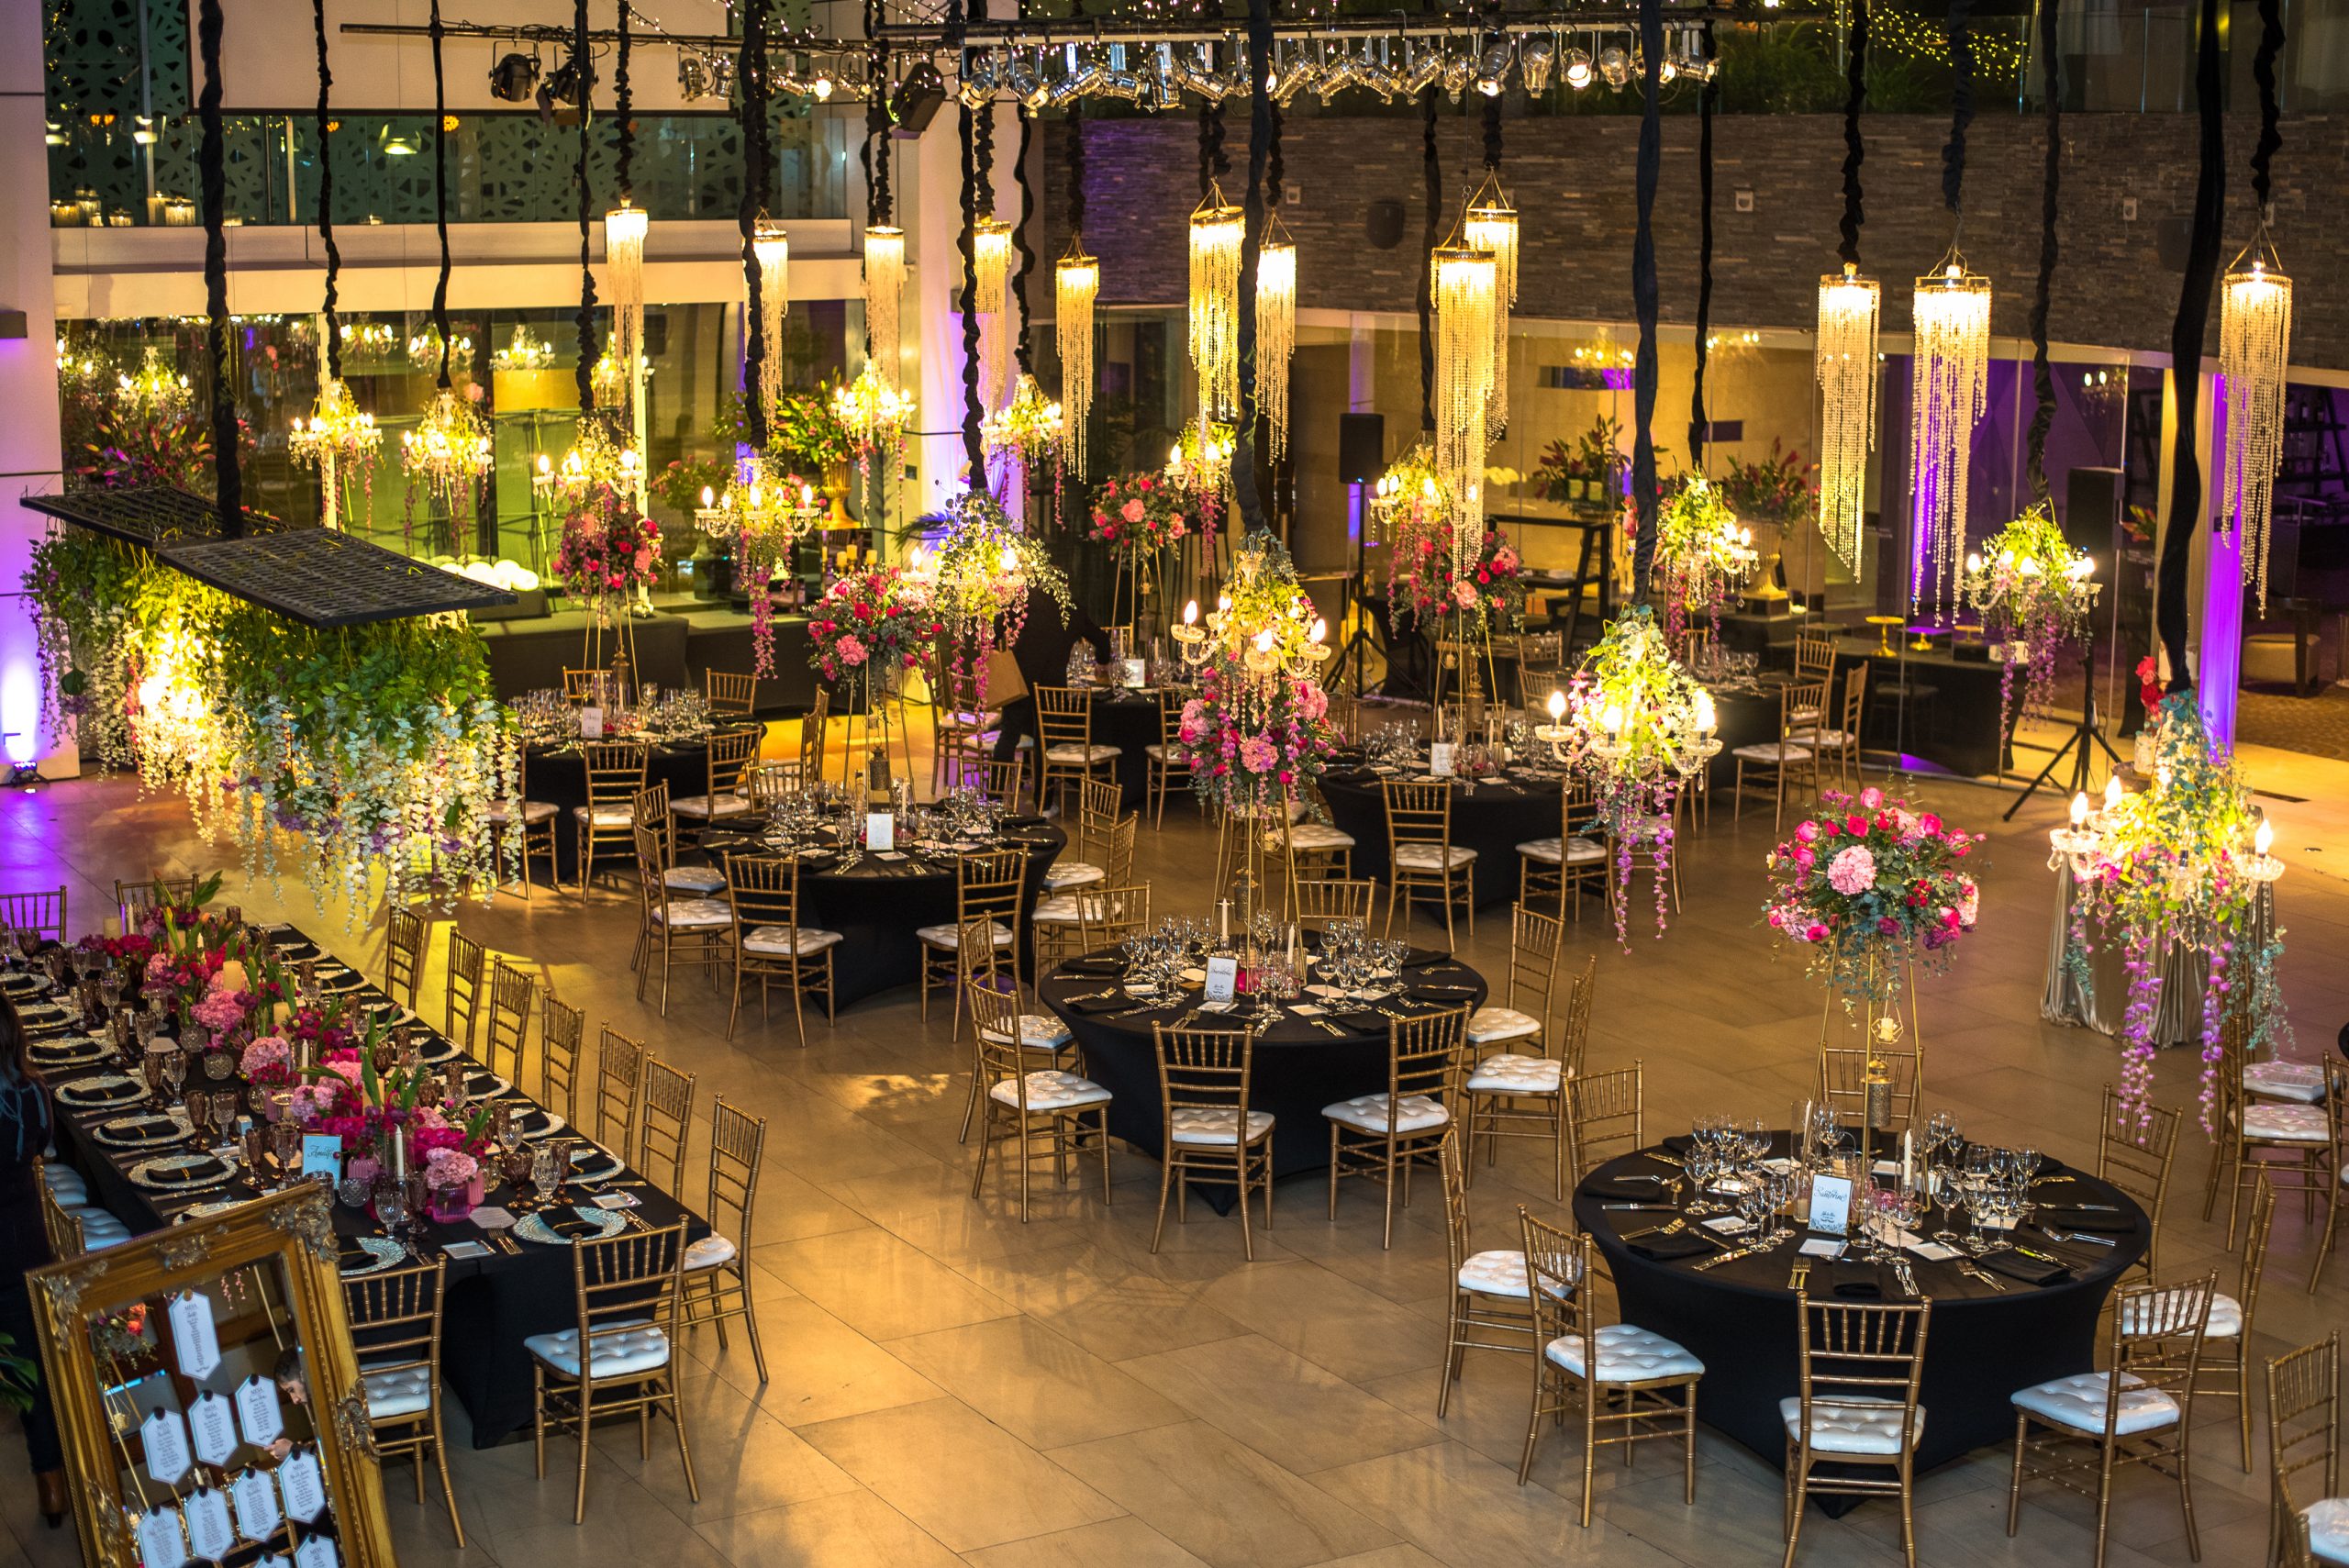 Hotel Renaissance Santiago ofrece diversas experiencias para la realización de eventos y matrimonios.